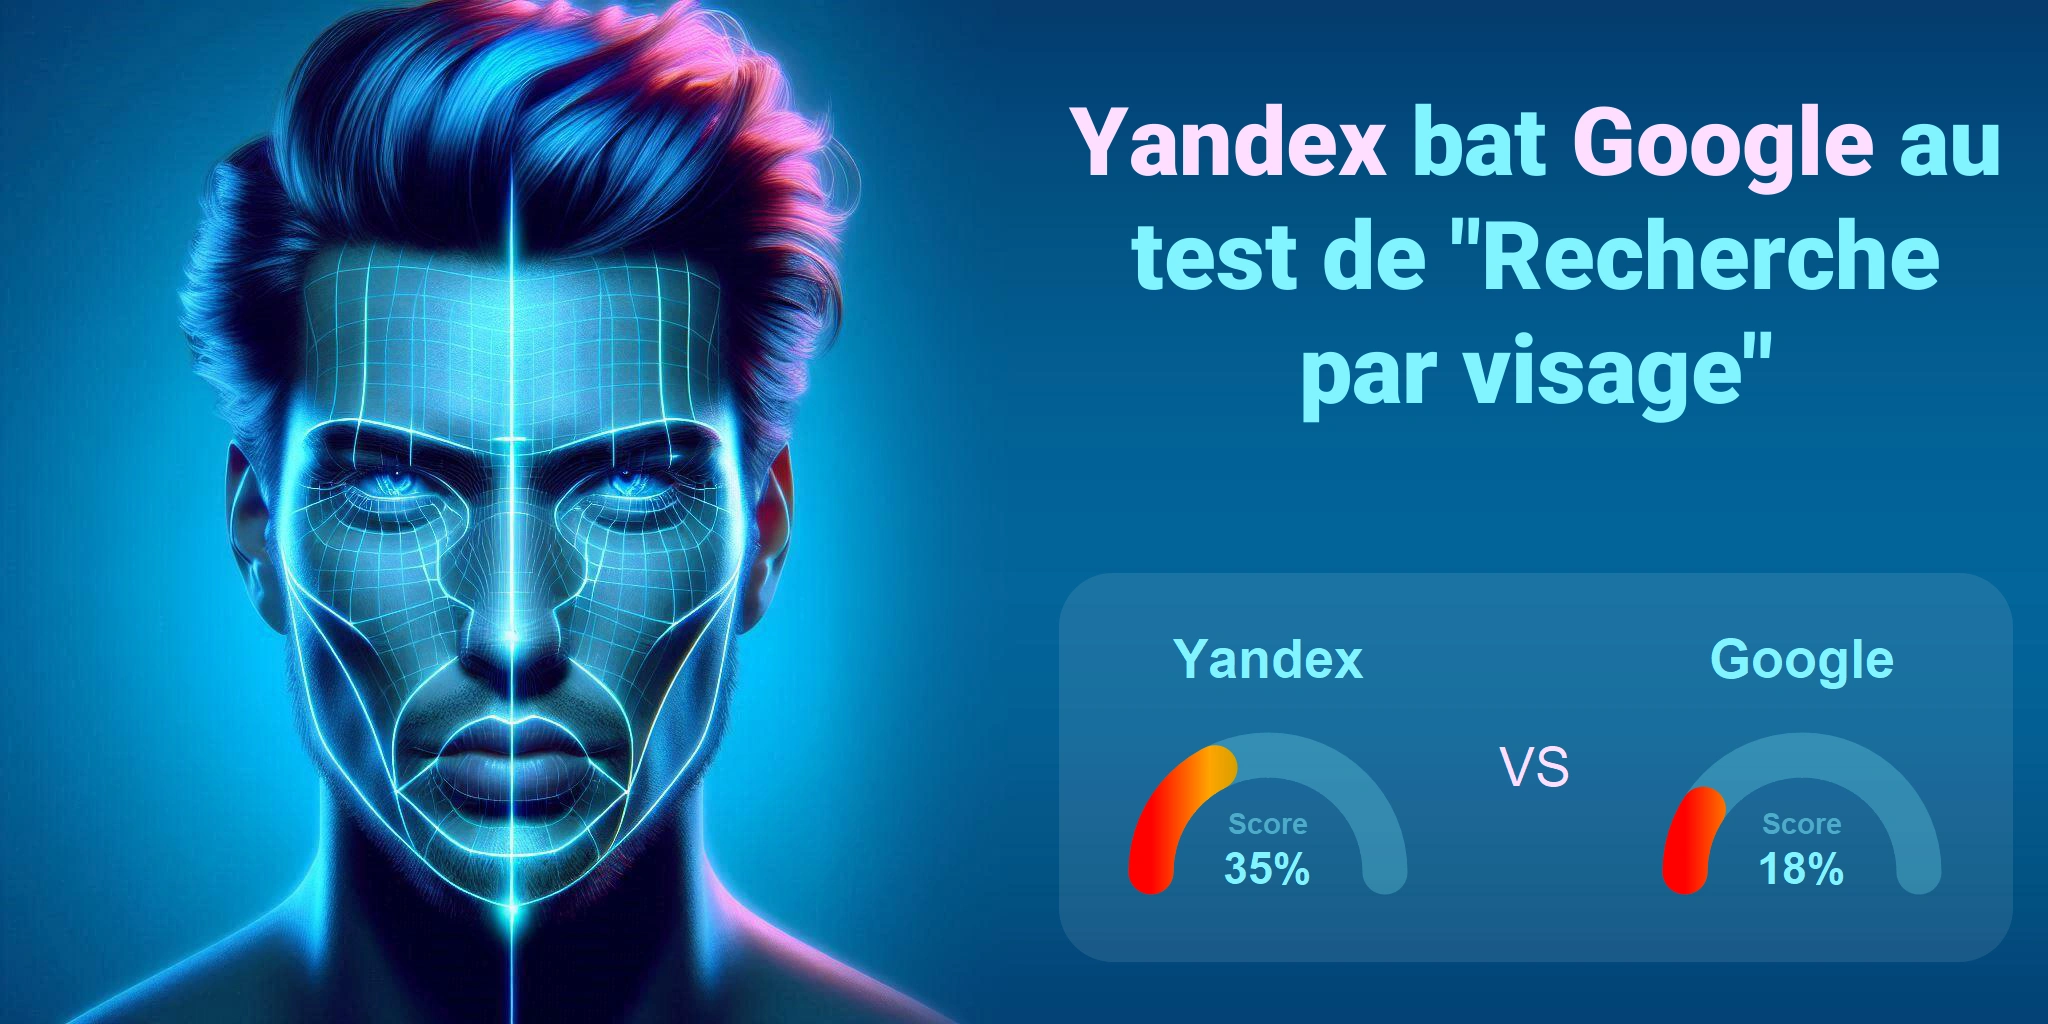 Google.com vs Yandex.com